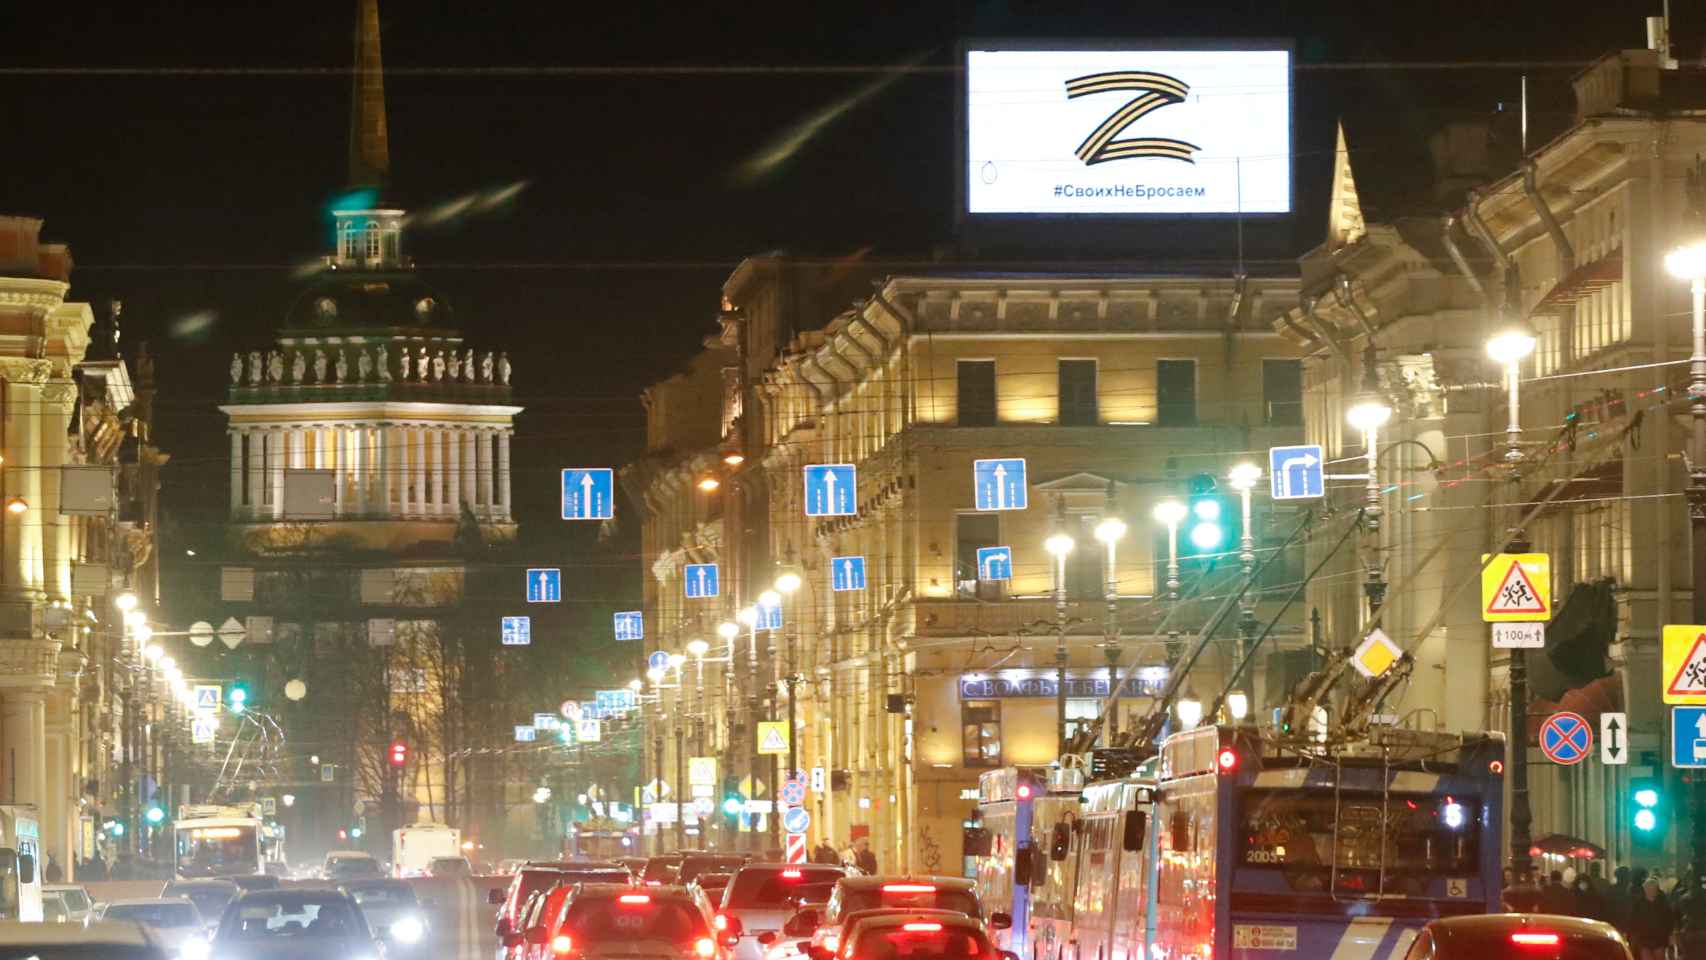 Letrero publicitario en la ciudad de San Petersburgo en apoyo de las Fuerzas Armadas rusas.